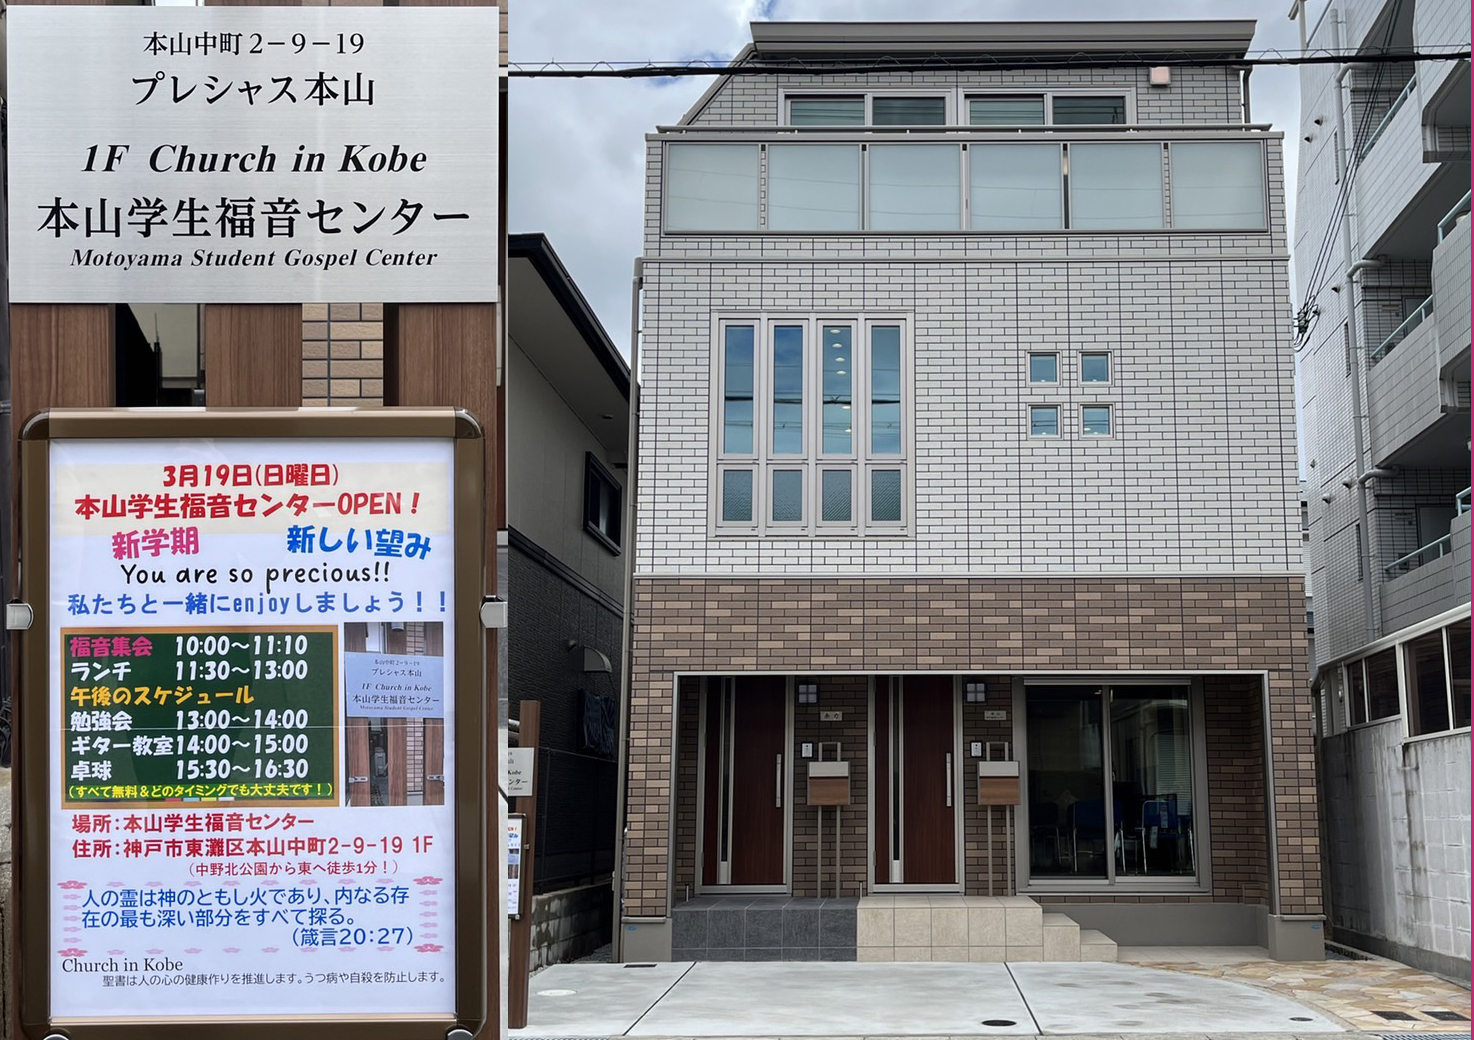 Motoyama Student Gospel Center